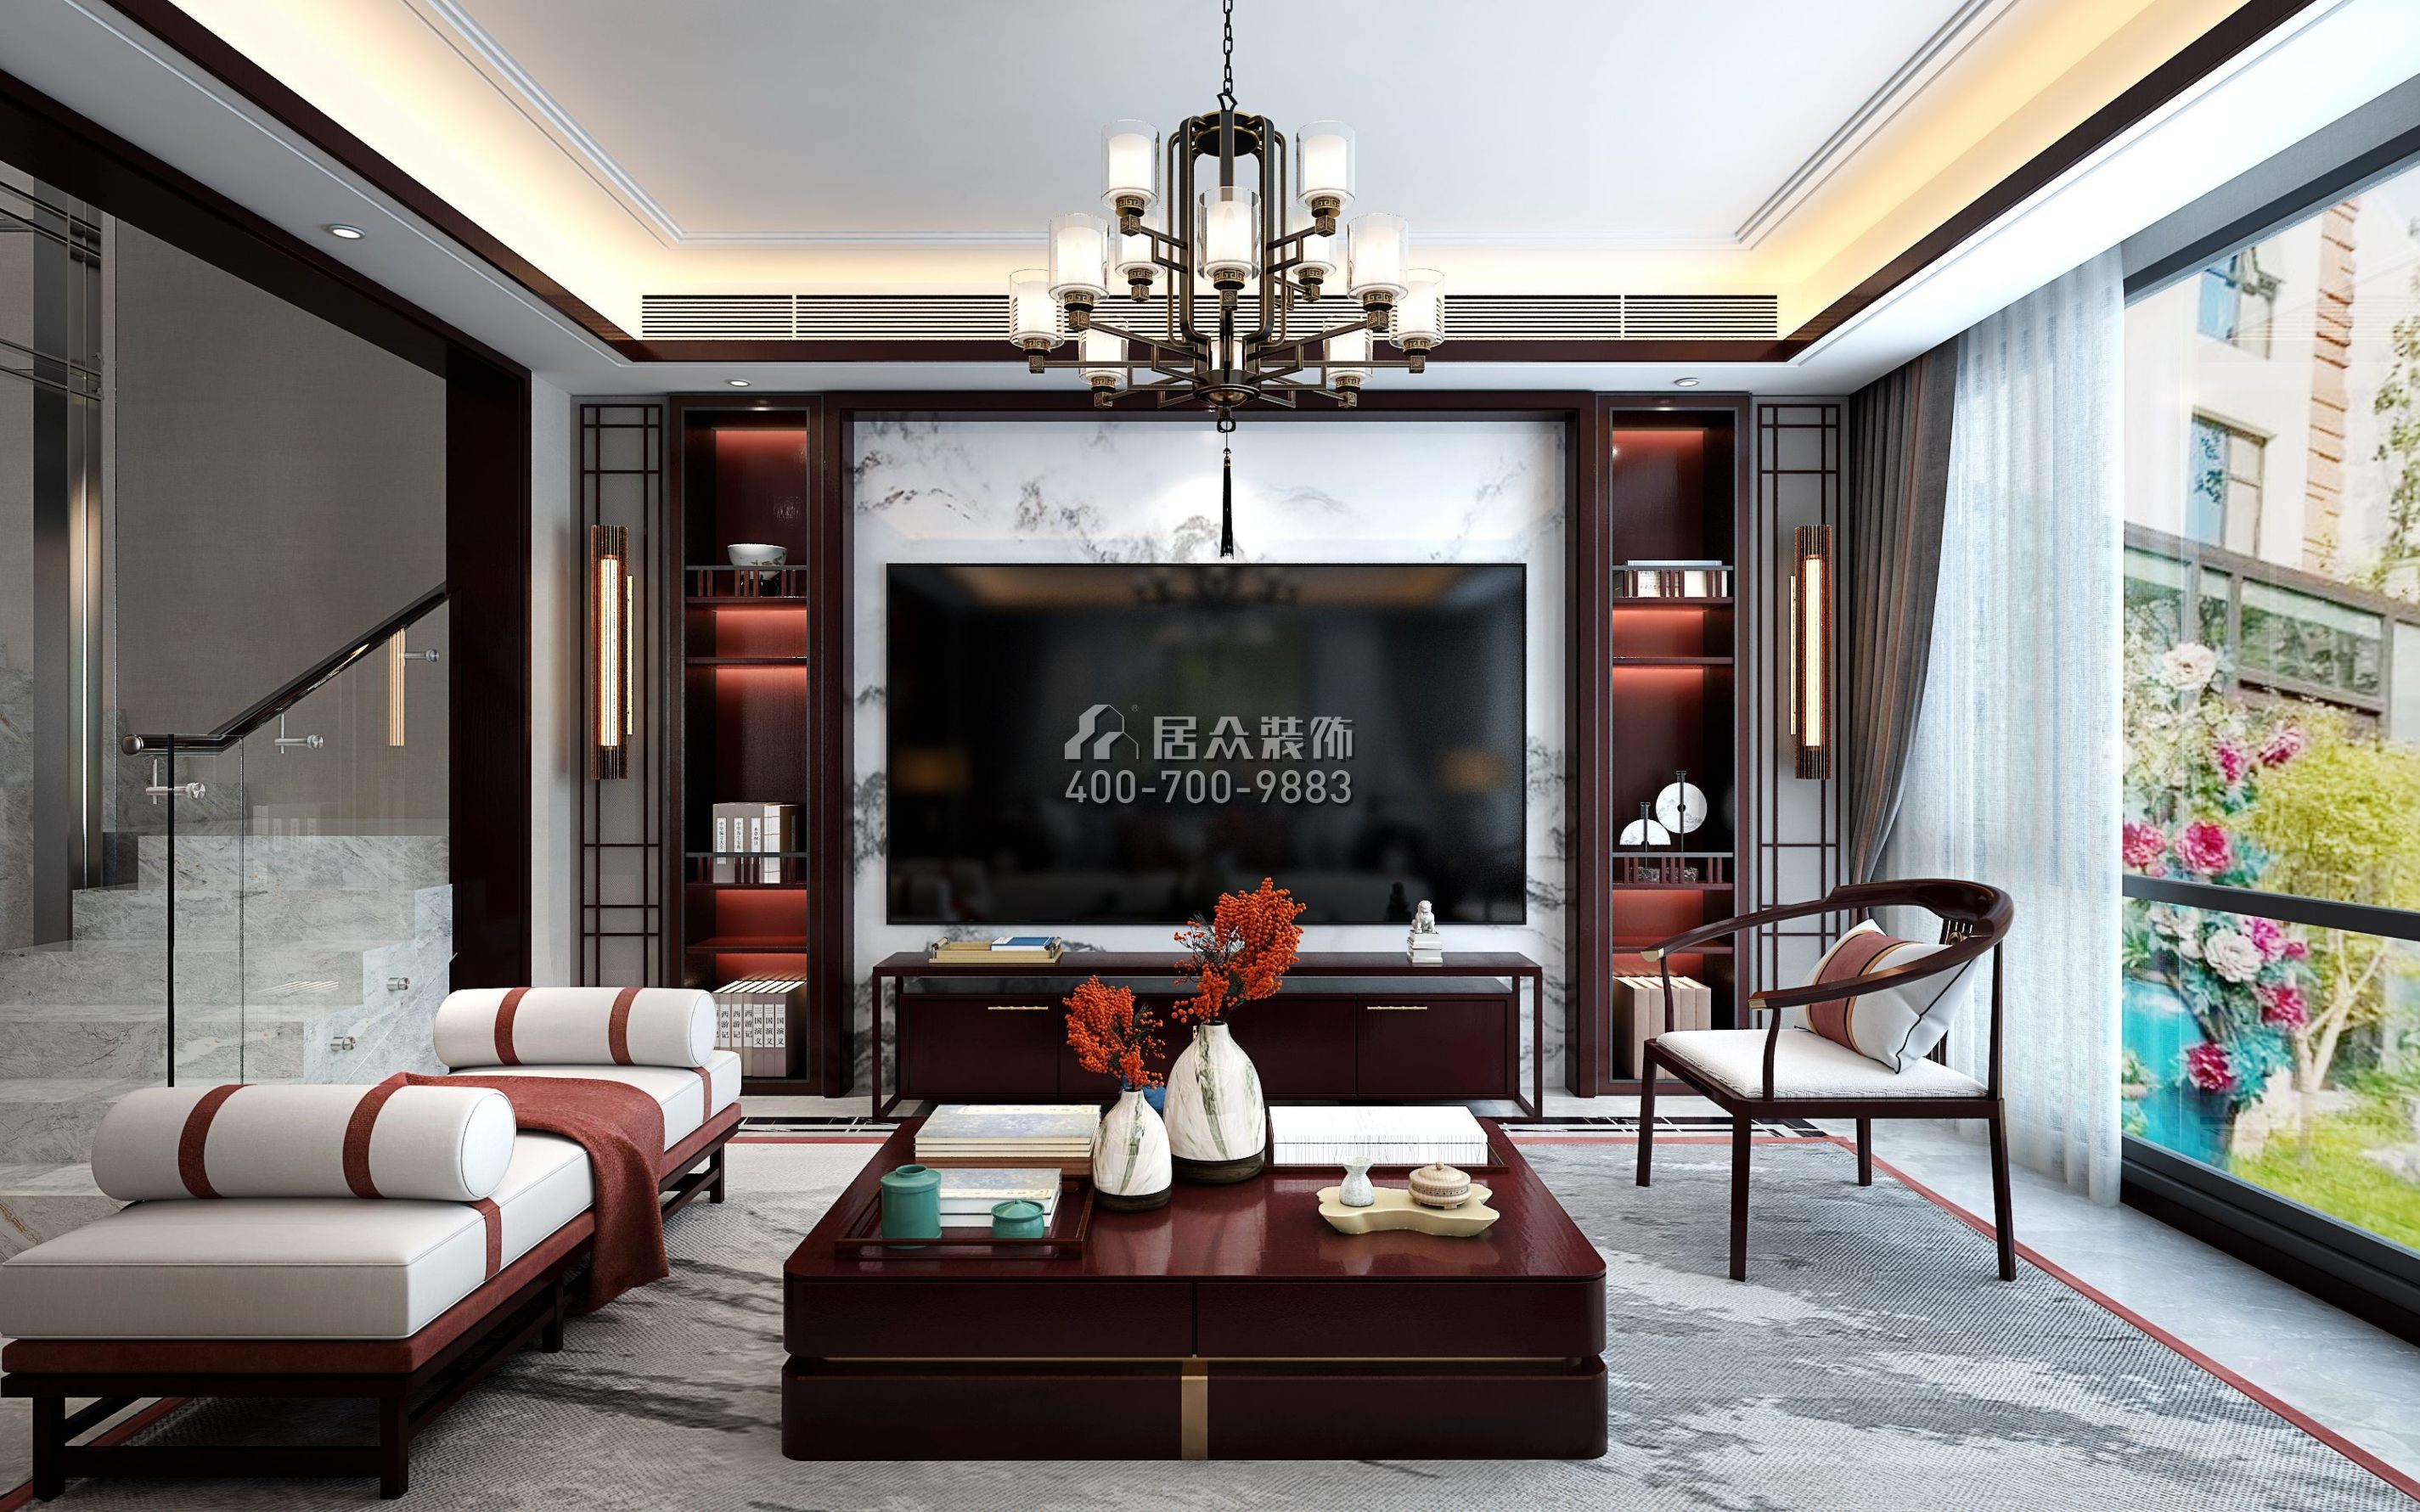 天鵝灣3期450平方米中式風格別墅戶型客廳裝修效果圖